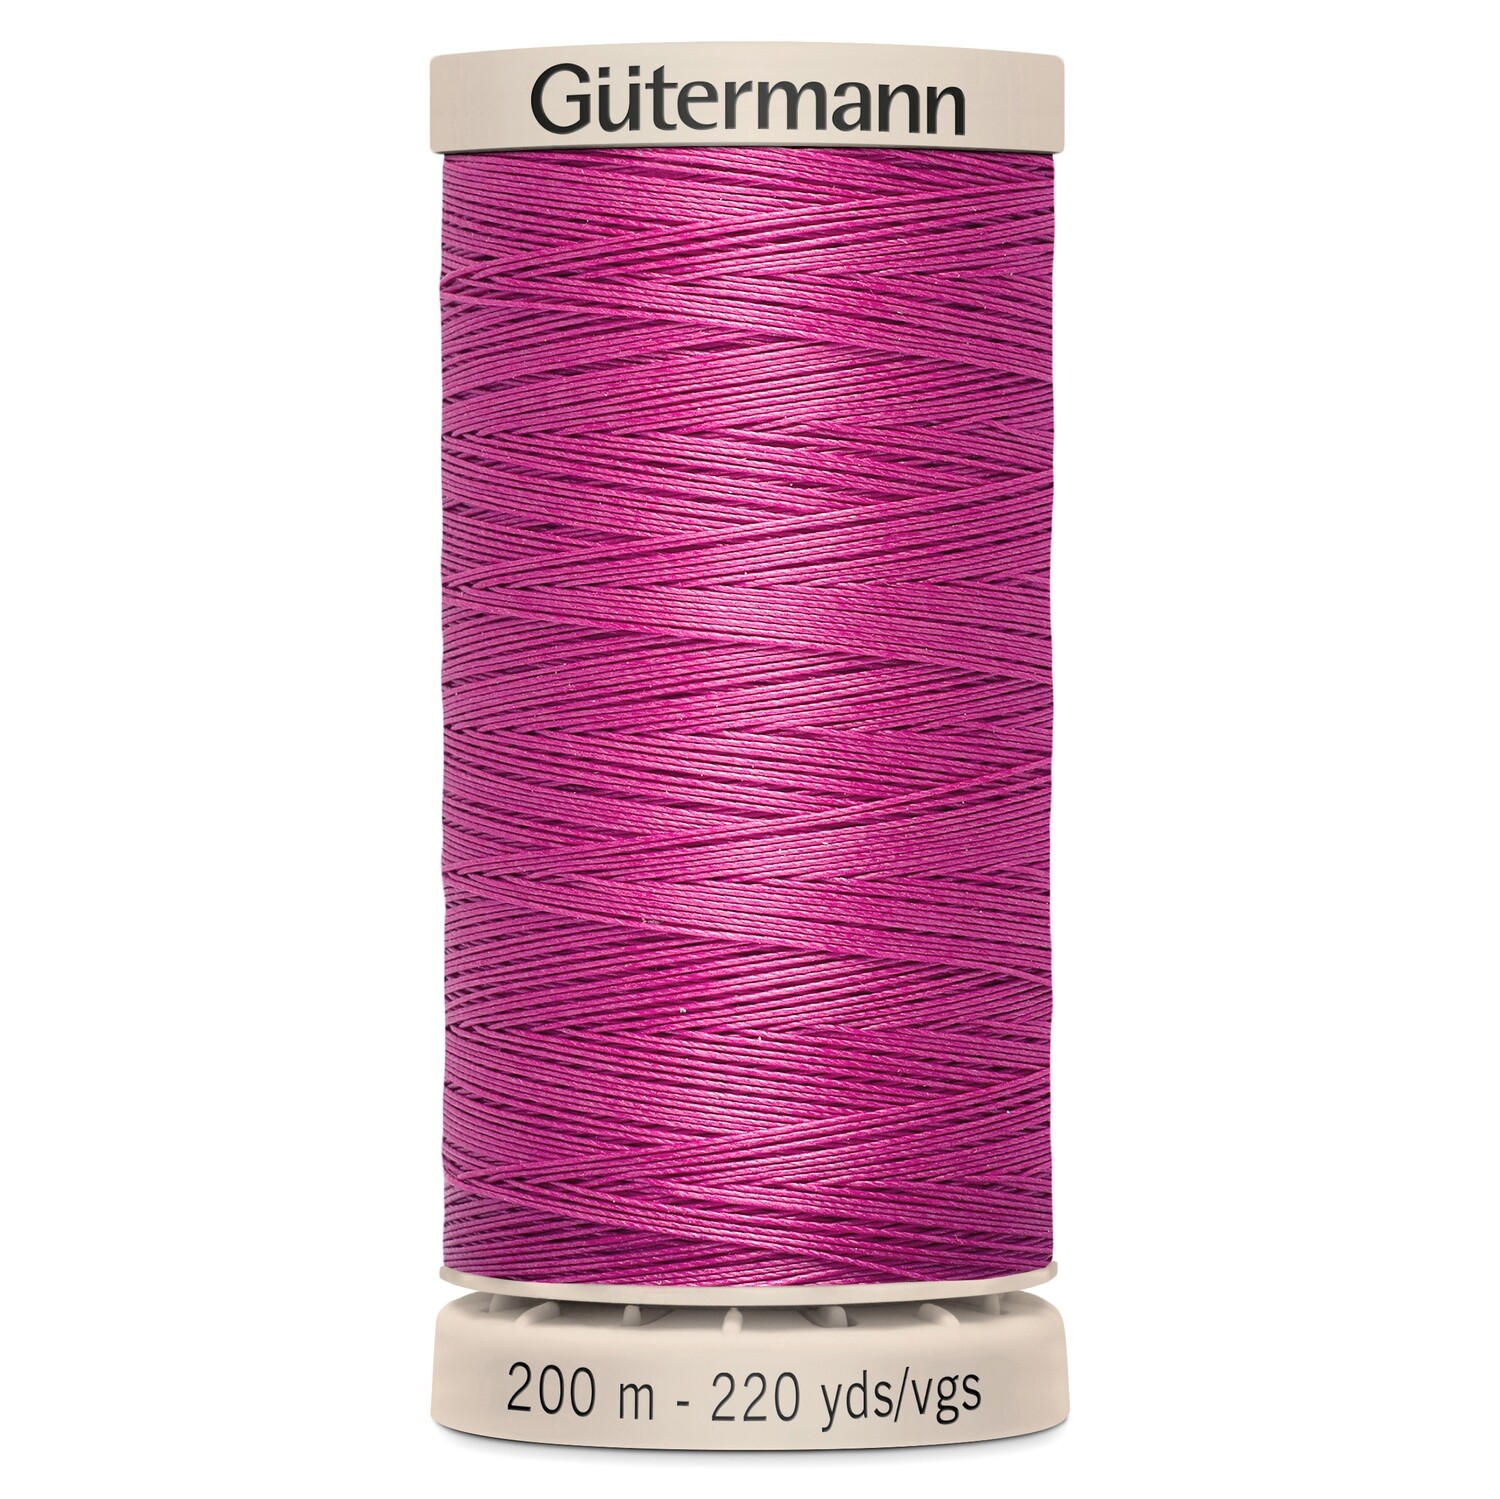 Gutermann Quilting thread 200m 2955